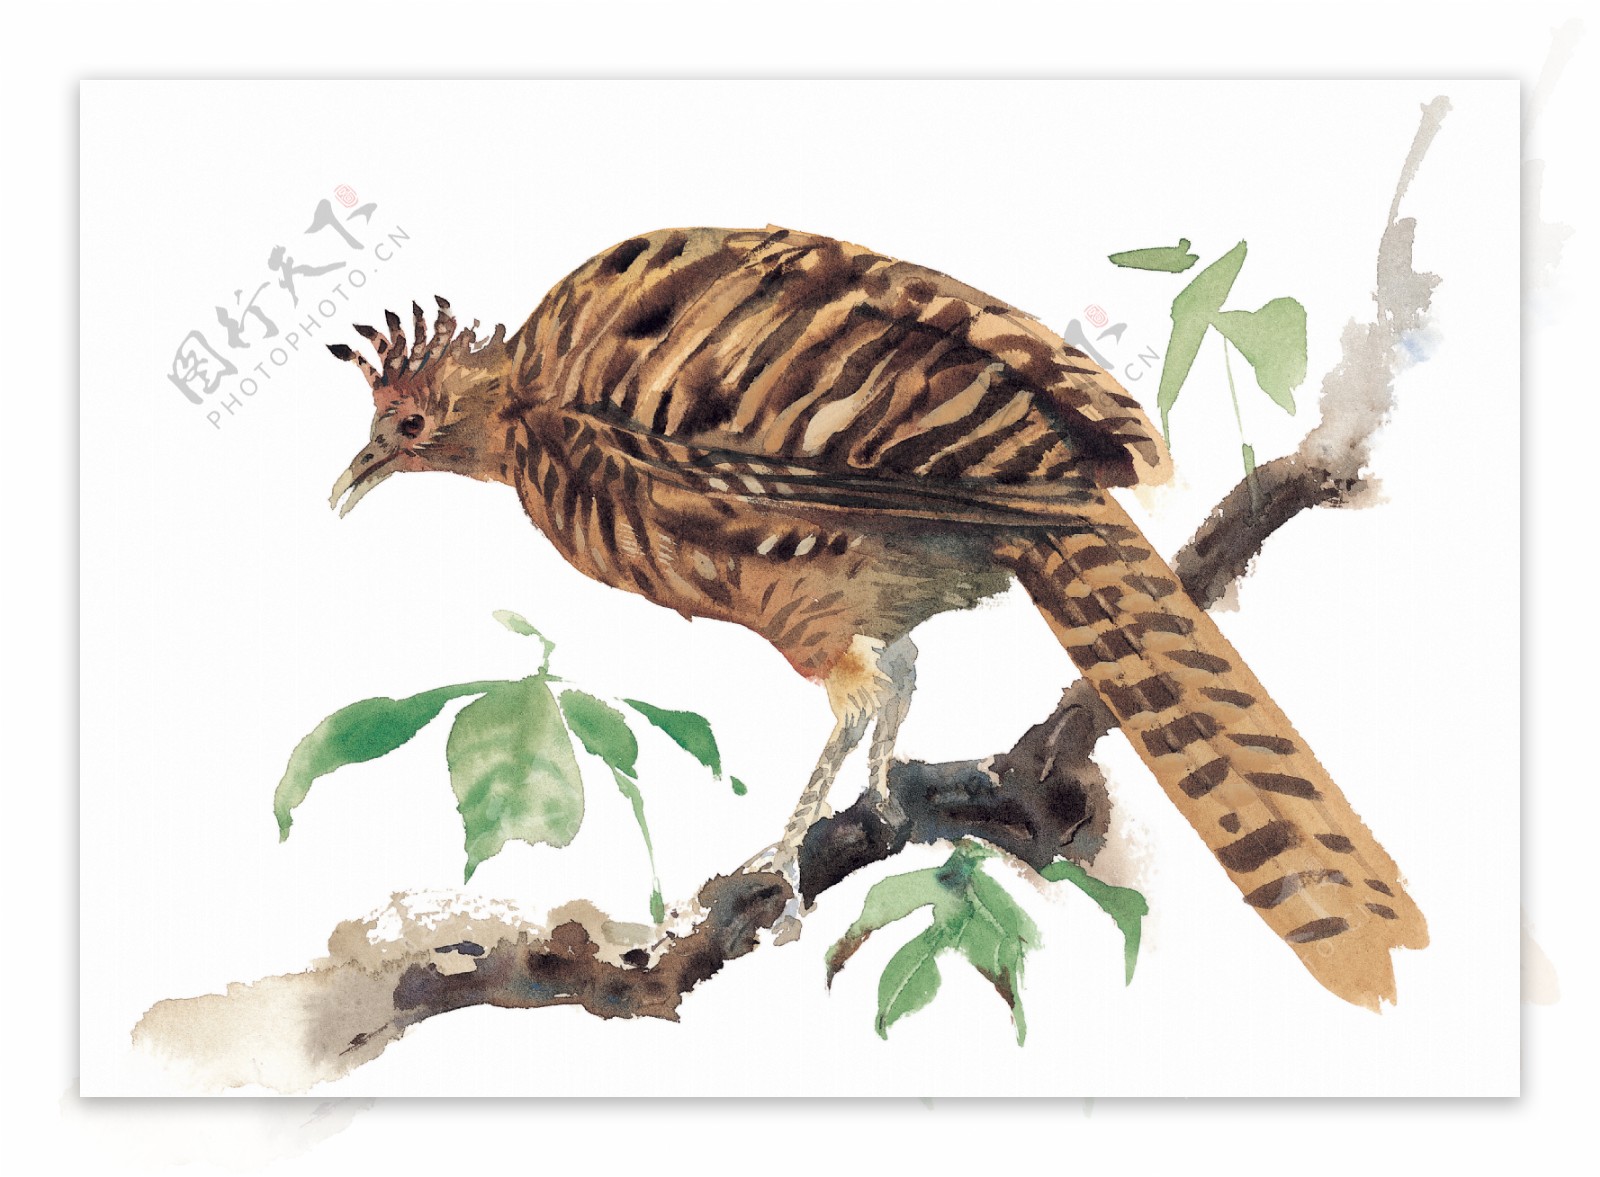 彩绘鸟类飞禽素材收集绘画五颜六色各类鸟